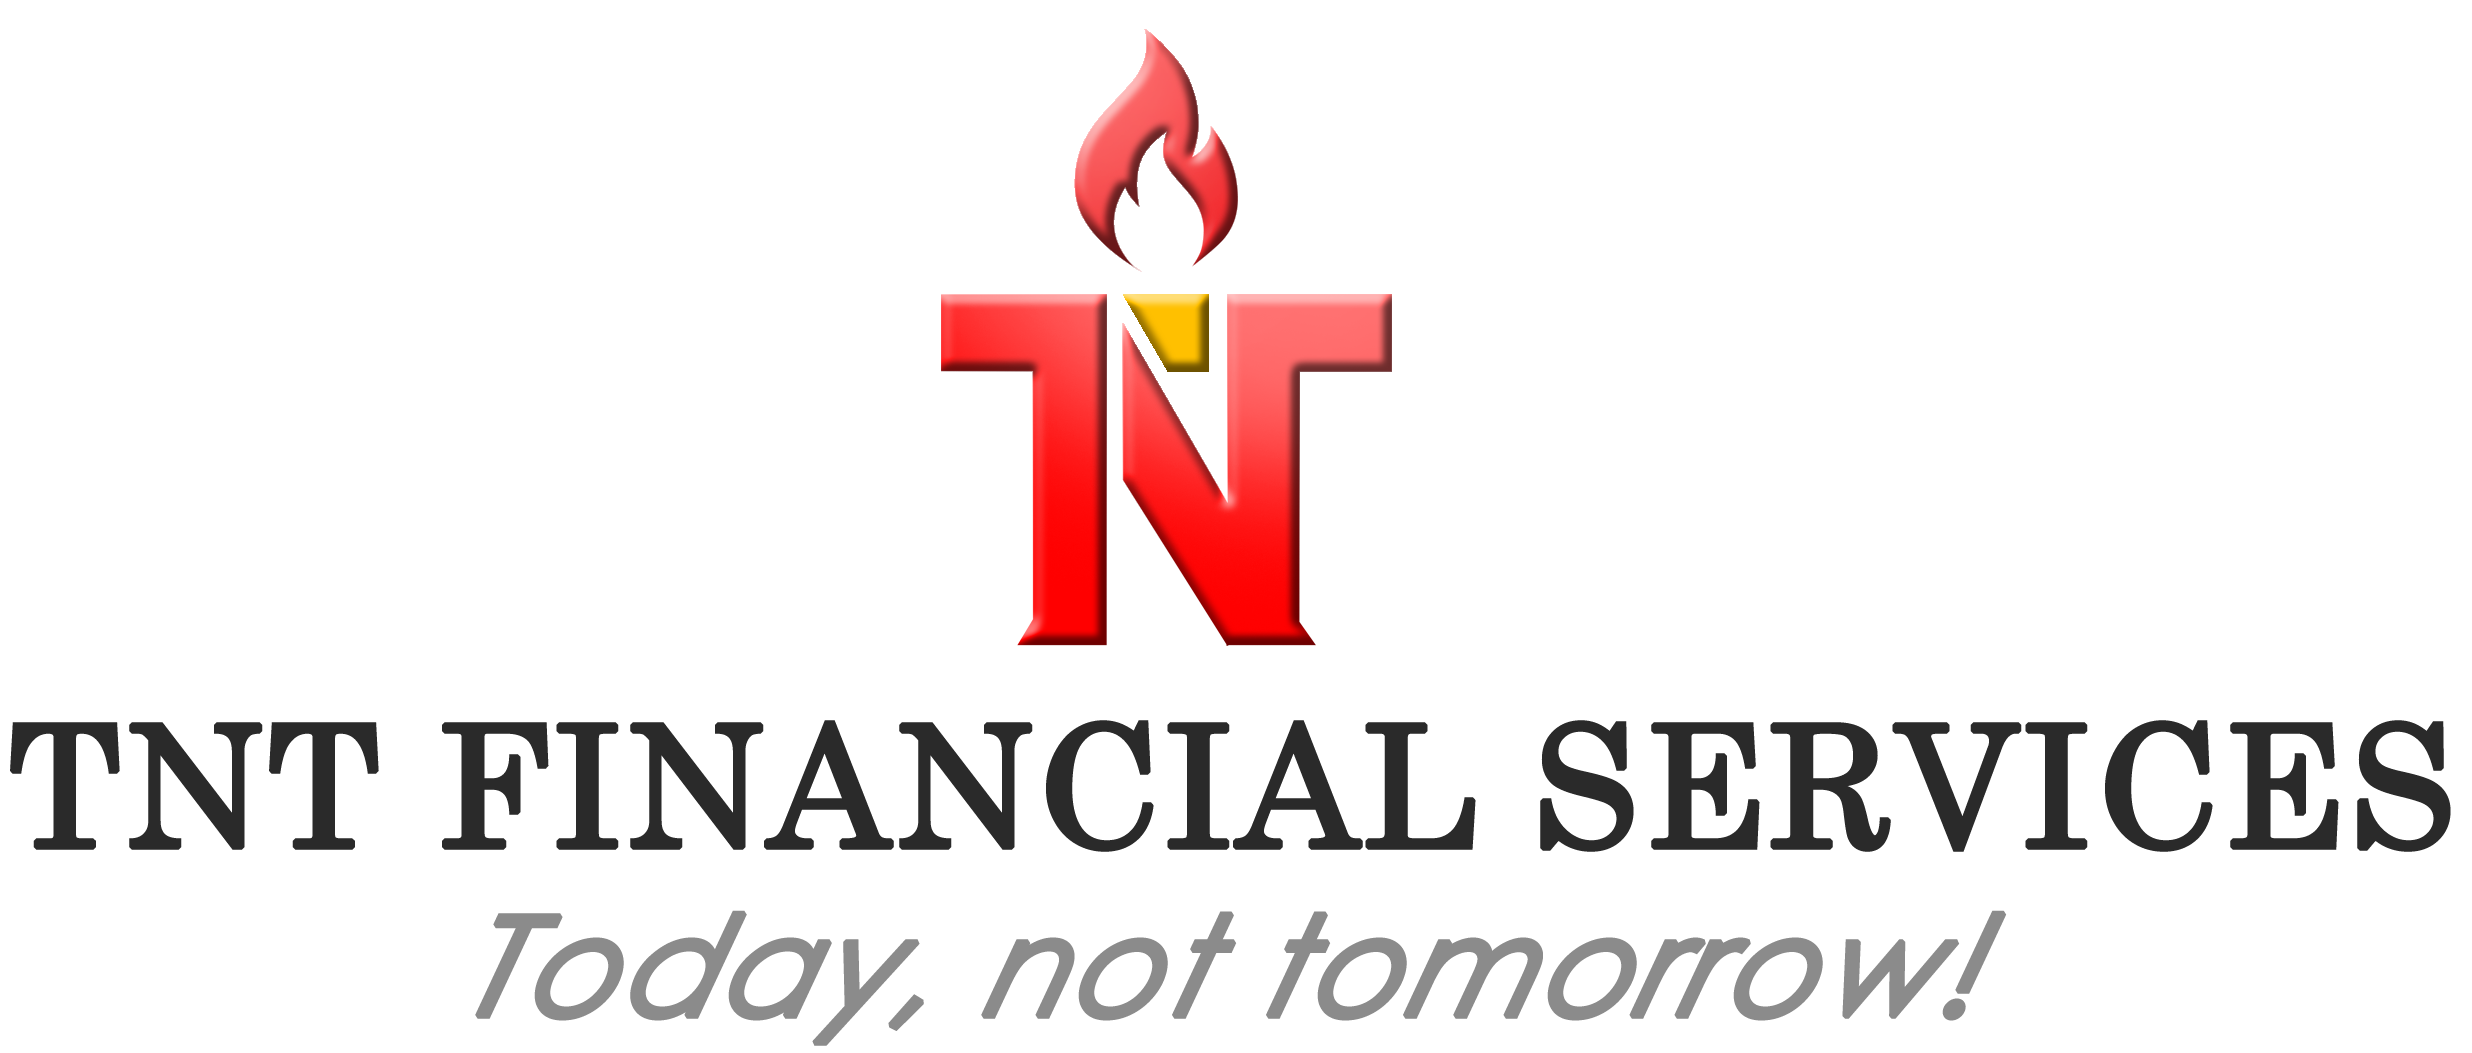 TNT Financial